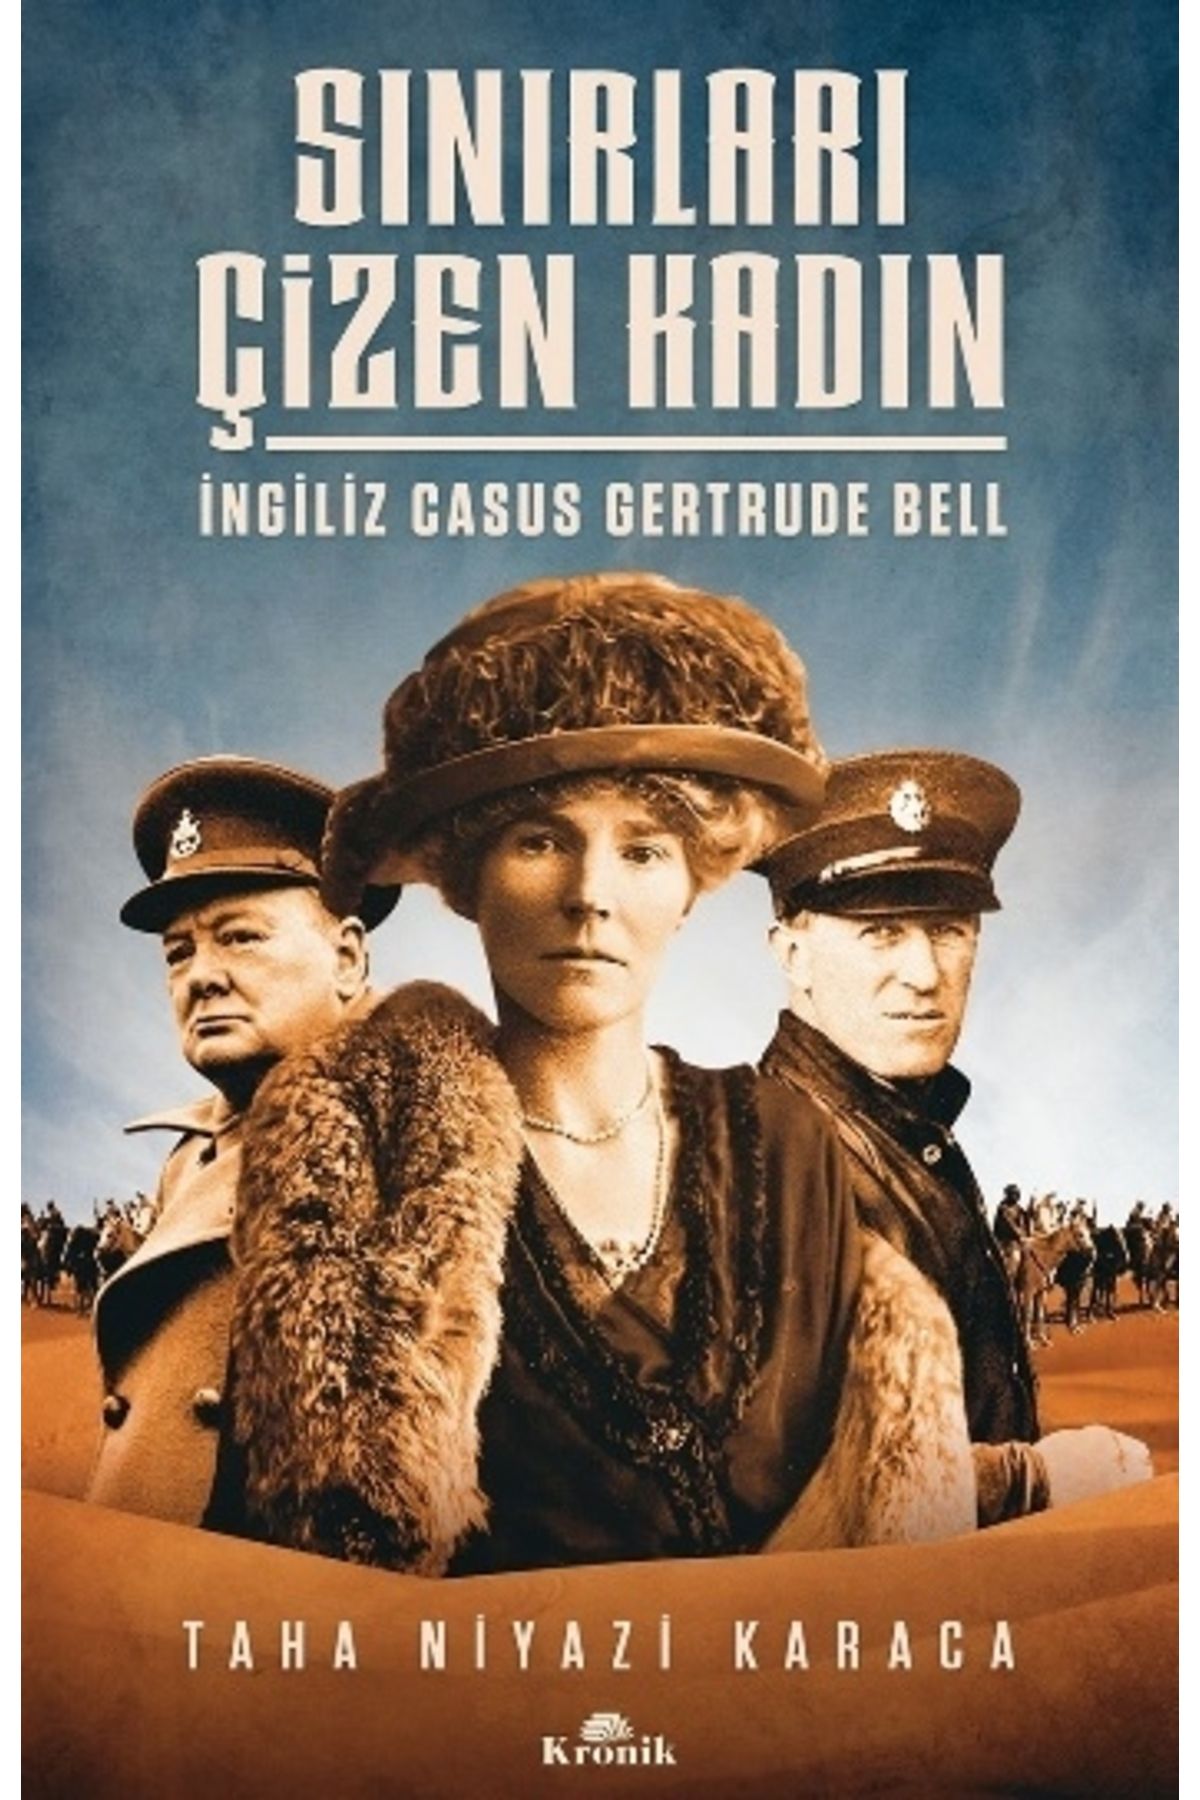 Kronik Kitap Sınırları Çizen Kadın - Ingiliz Casus Gertrude Bell